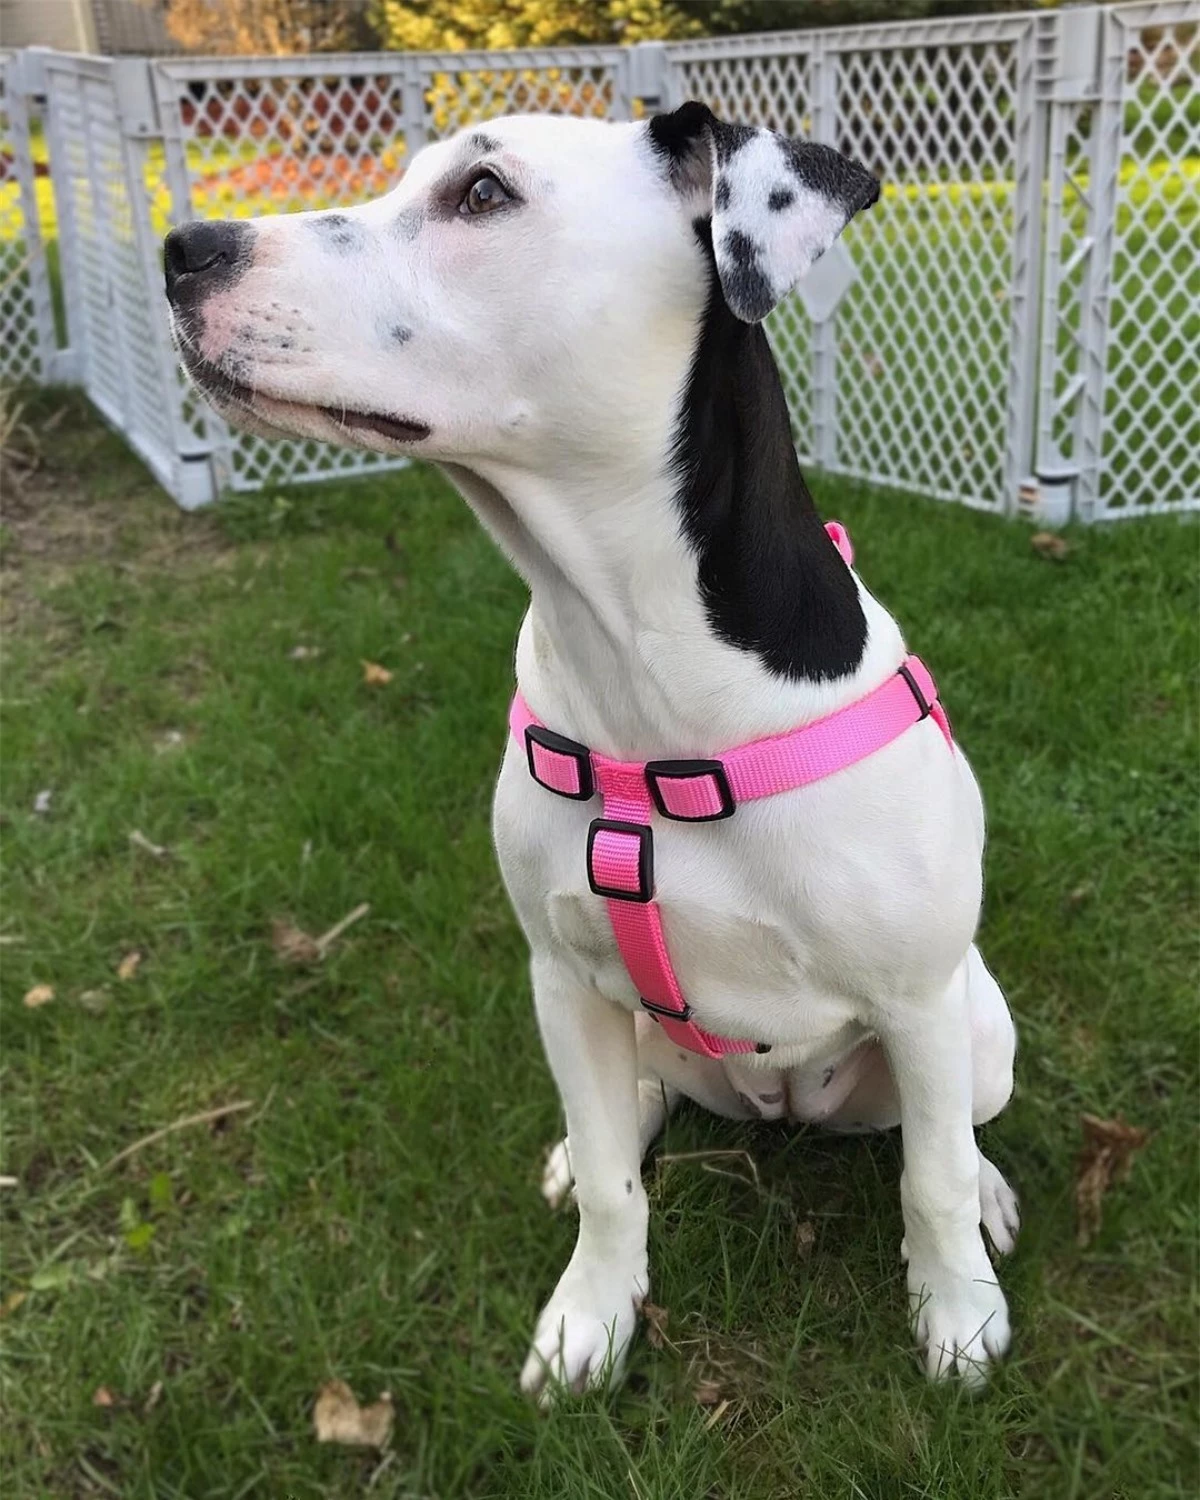 Chú chó với đôi tai có hình phiên bản của chính mình.